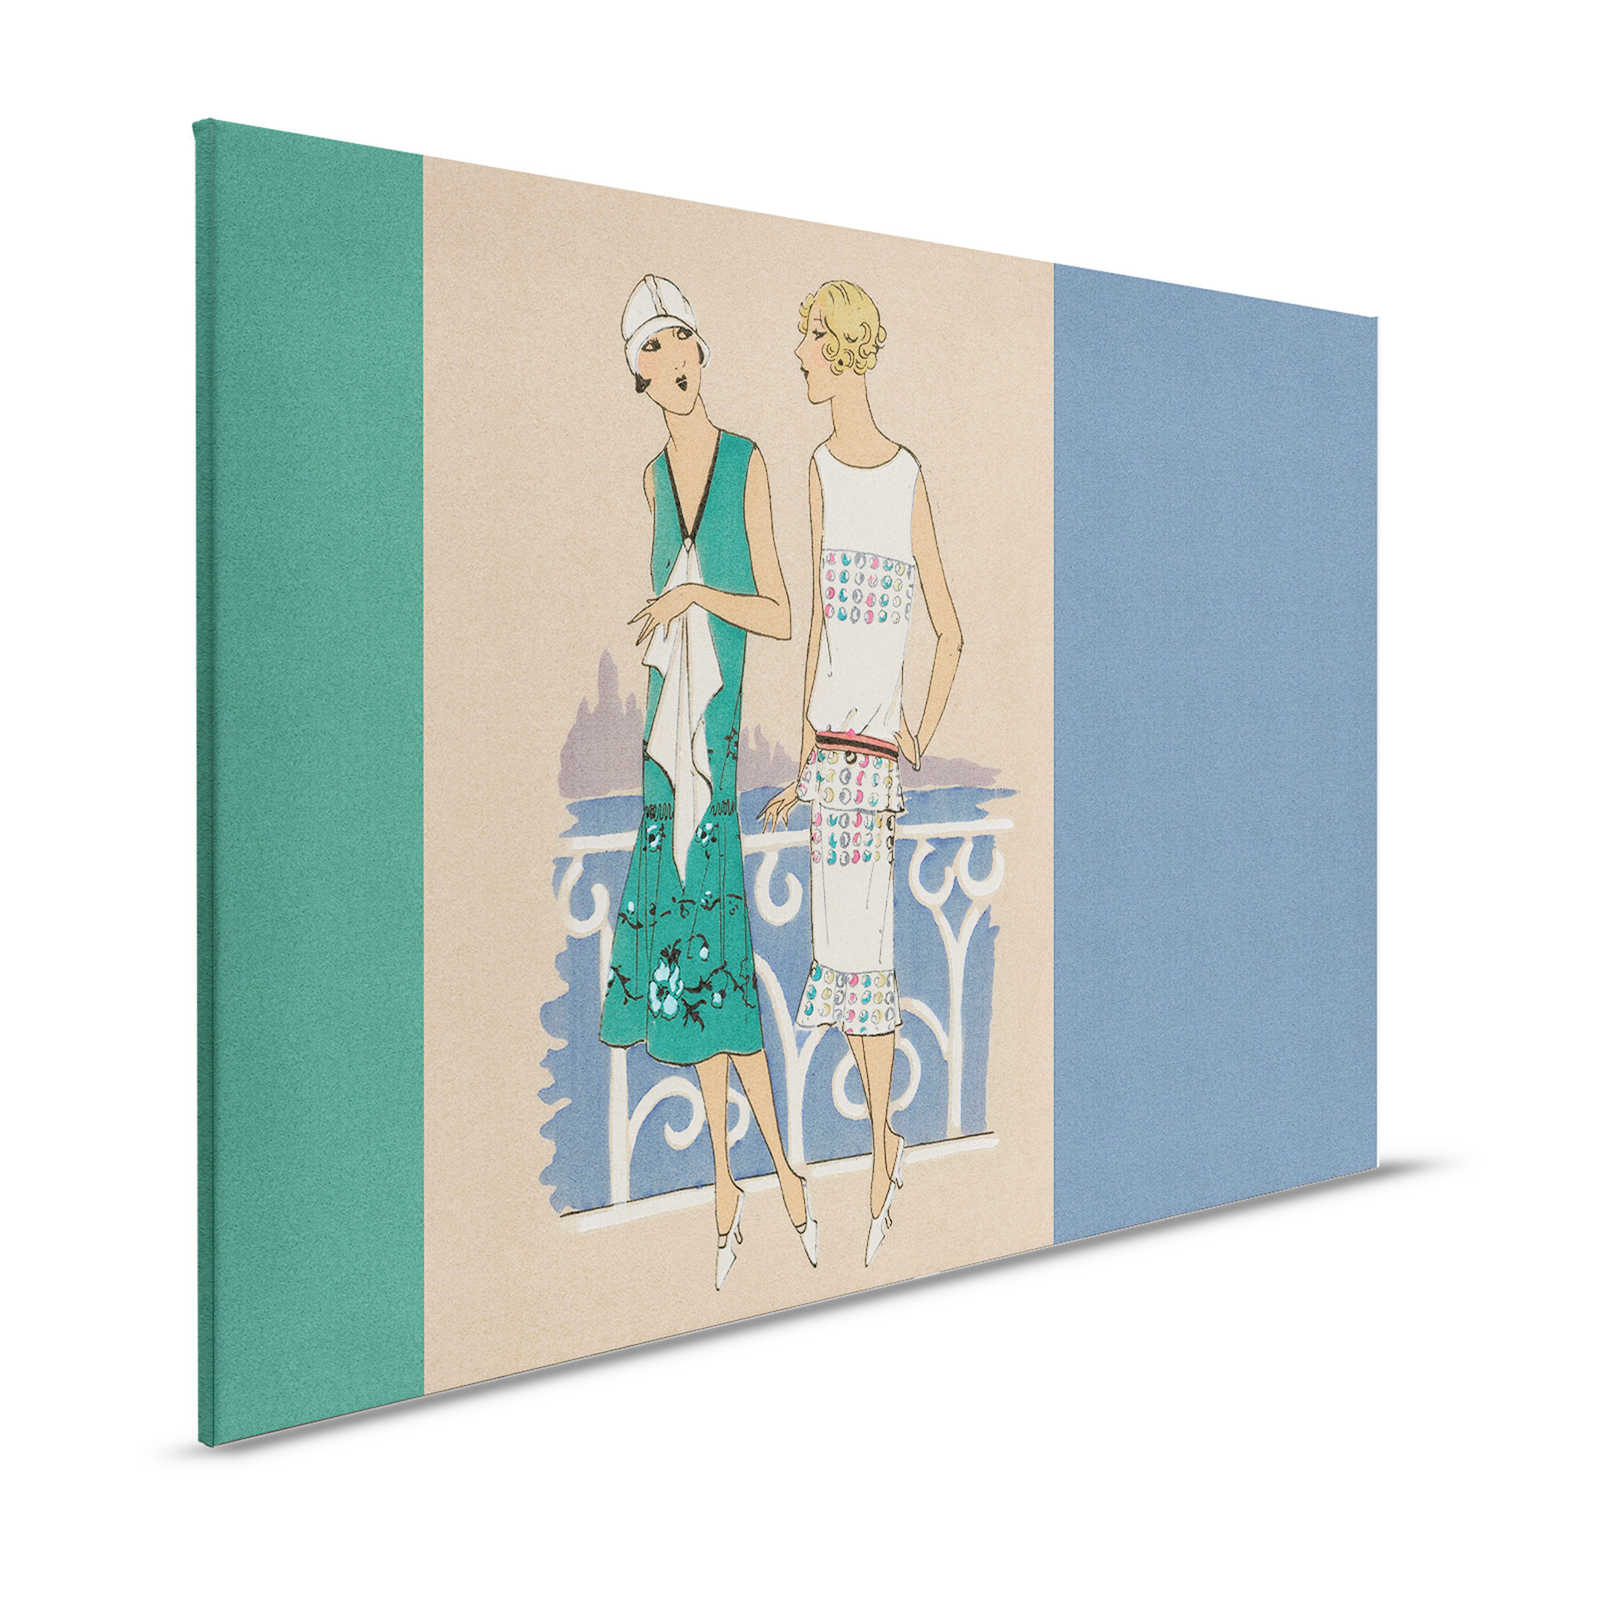 Parisienne 3 - Lienzo Retro Impresión de moda años 20 en azul y verde - 1,20 m x 0,80 m
